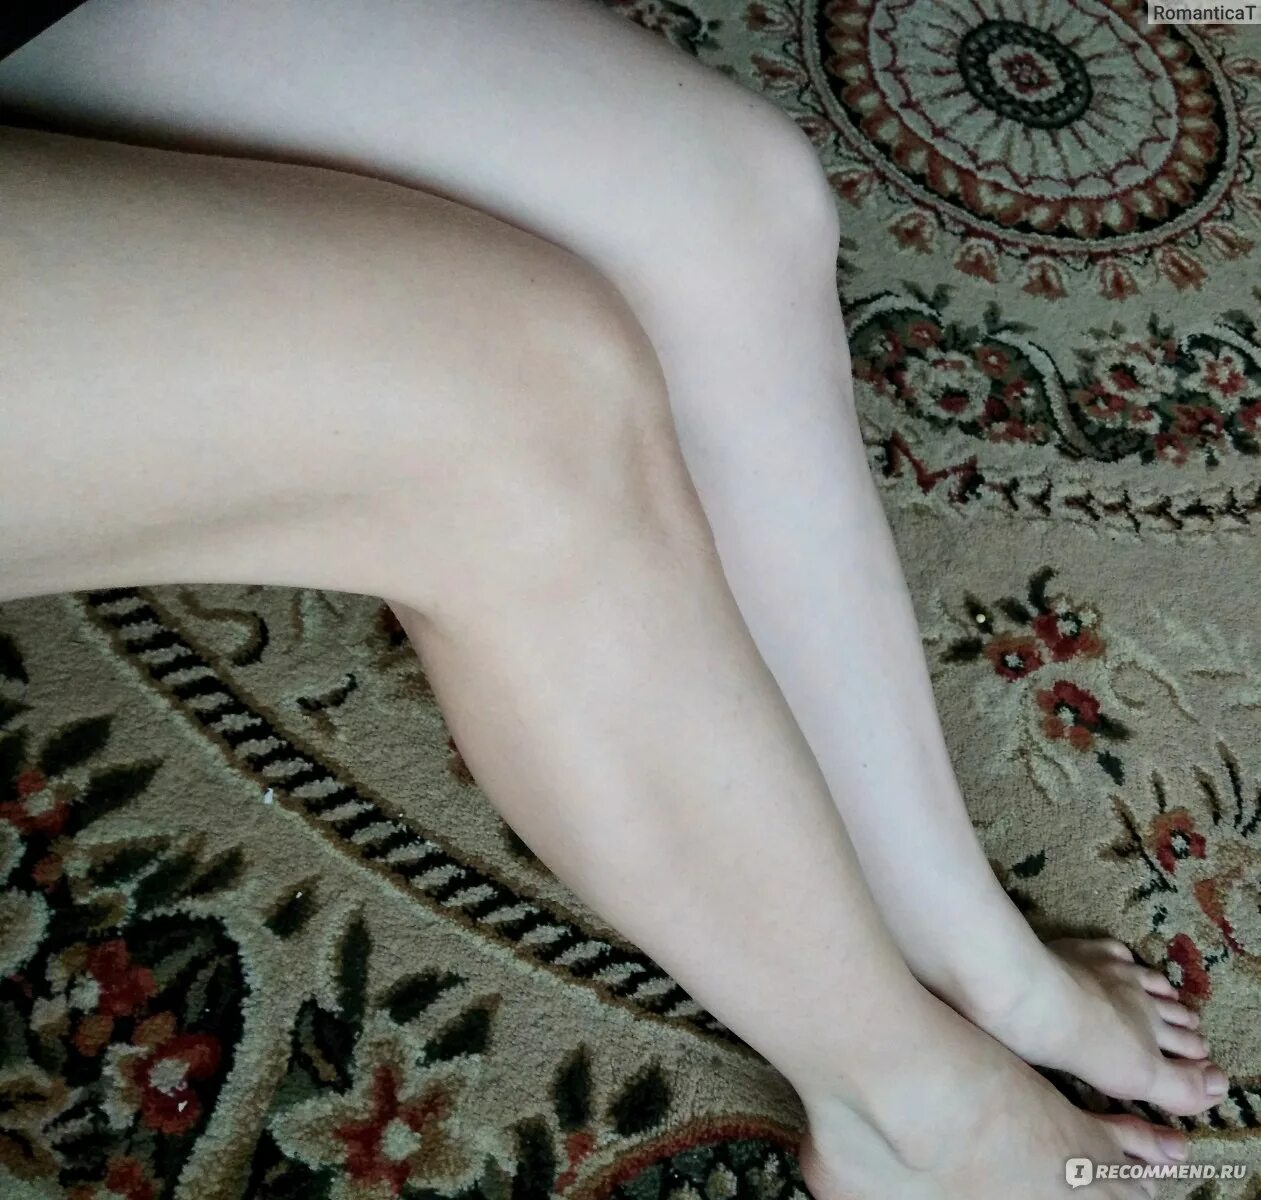 Бледные ноги. Бледные женские ноги. Бледные ступни ног. Холодные бледные ноги